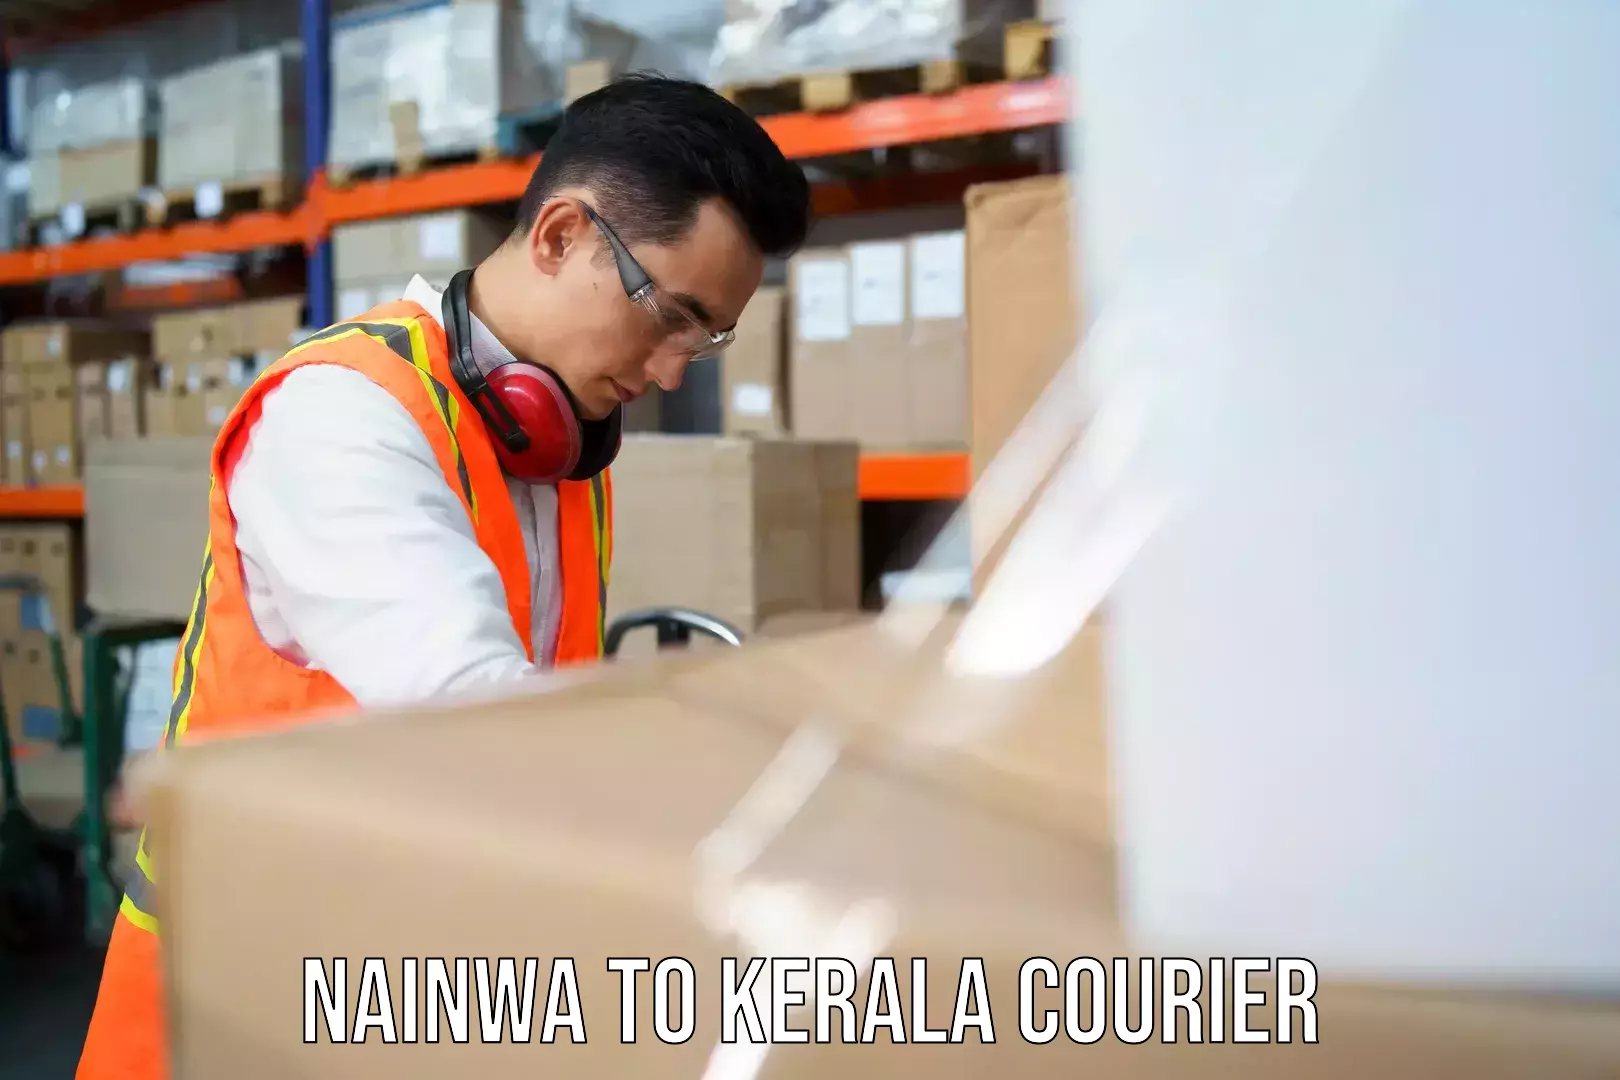 Express delivery network Nainwa to Kerala